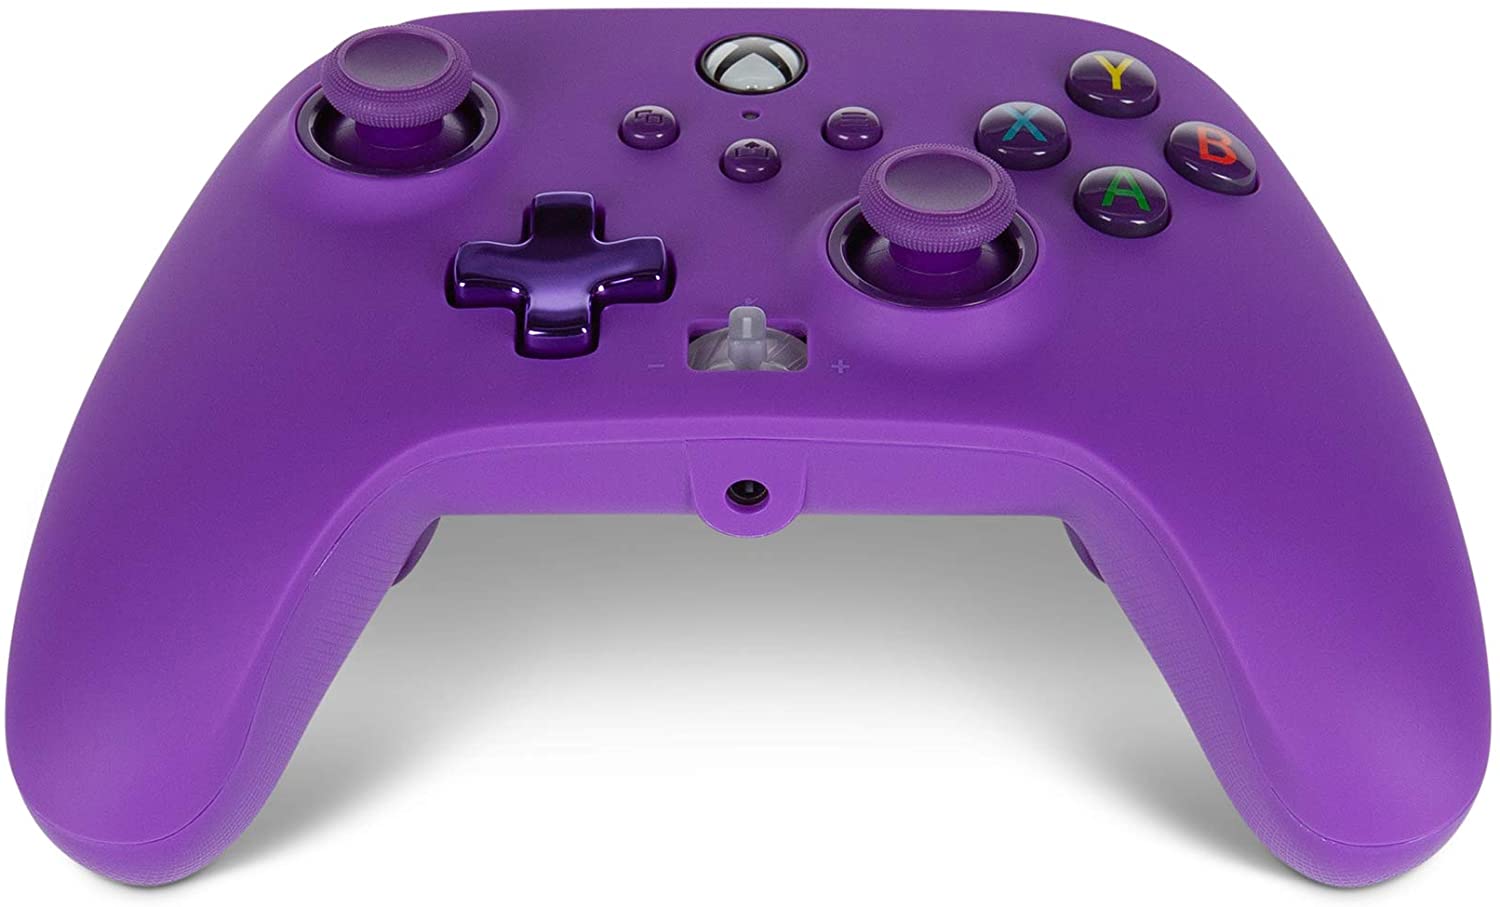 Power A Comando com Cabo Removível Purple Magma para Xbox Series/One/PC